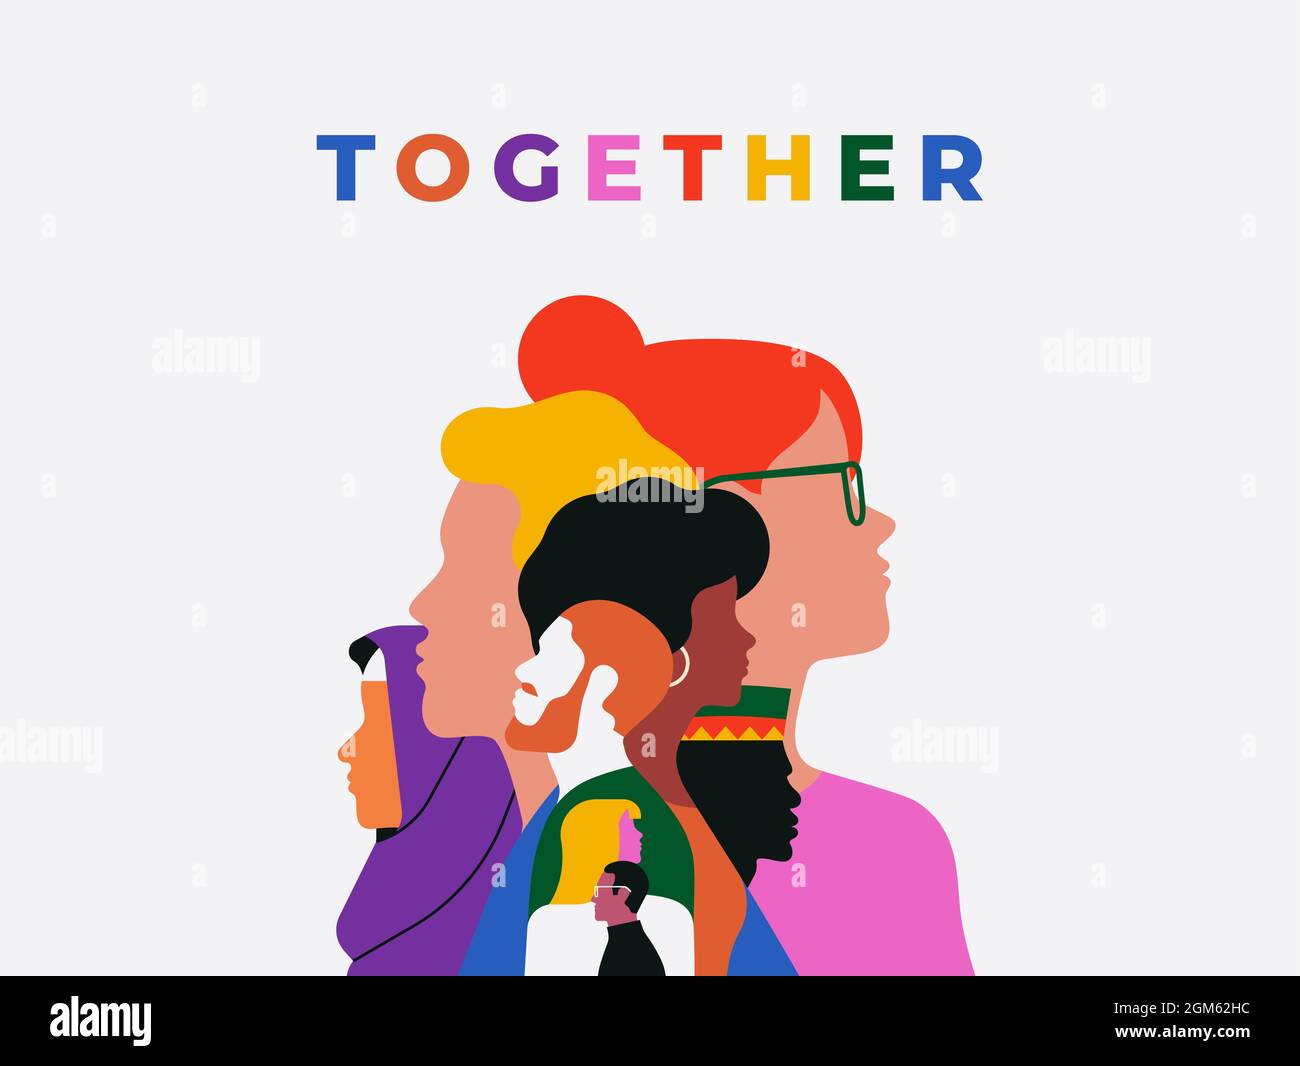 Zusammen bunte Zitat Illustration mit verschiedenen Menschen Gesichter. Ethnische Charakter Team flache Cartoon-Design für Einheit oder Gemeinschaft Hilfe Konzept. Stock Vektor